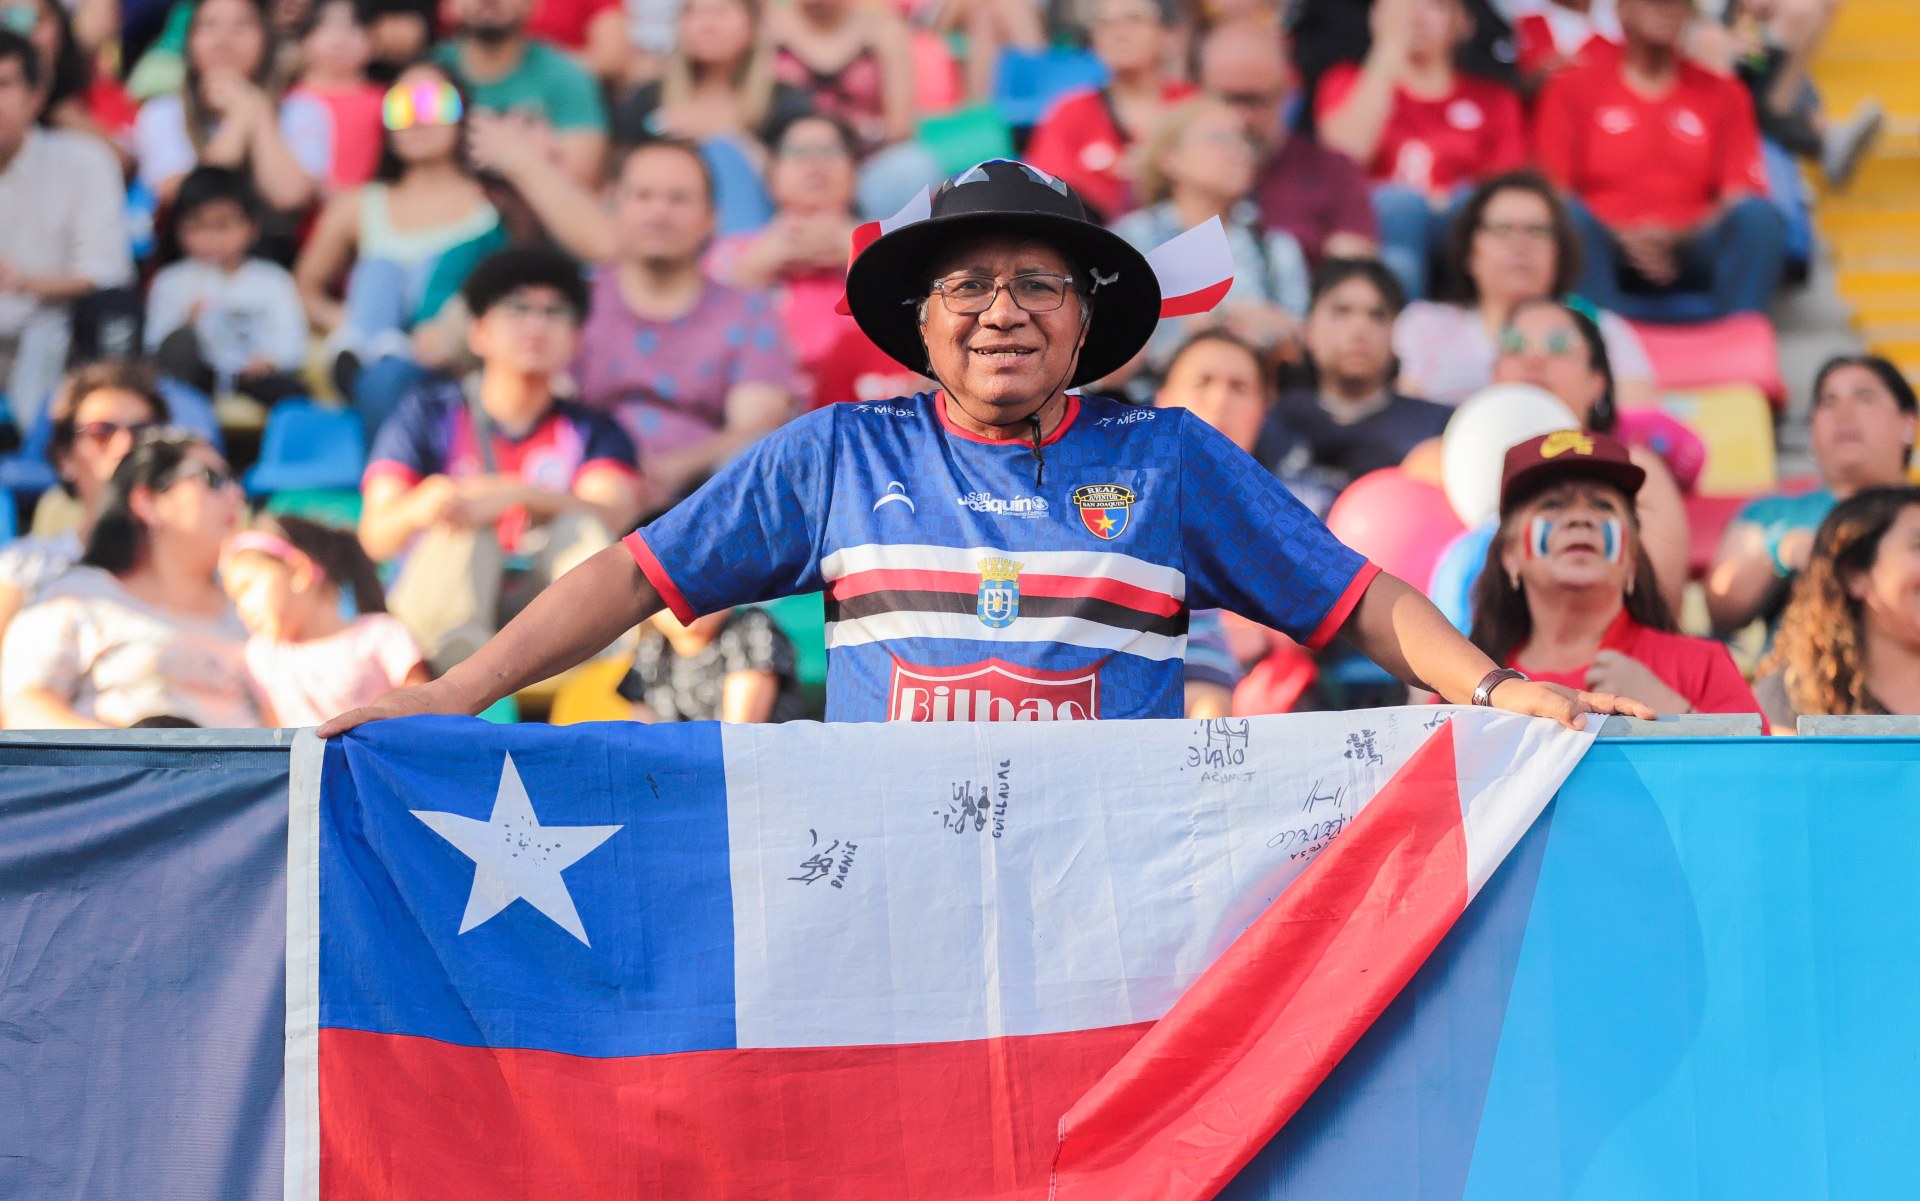 El dueño de la bandera más chilena de Santiago 2023: “Hemos puesto el corazón” 